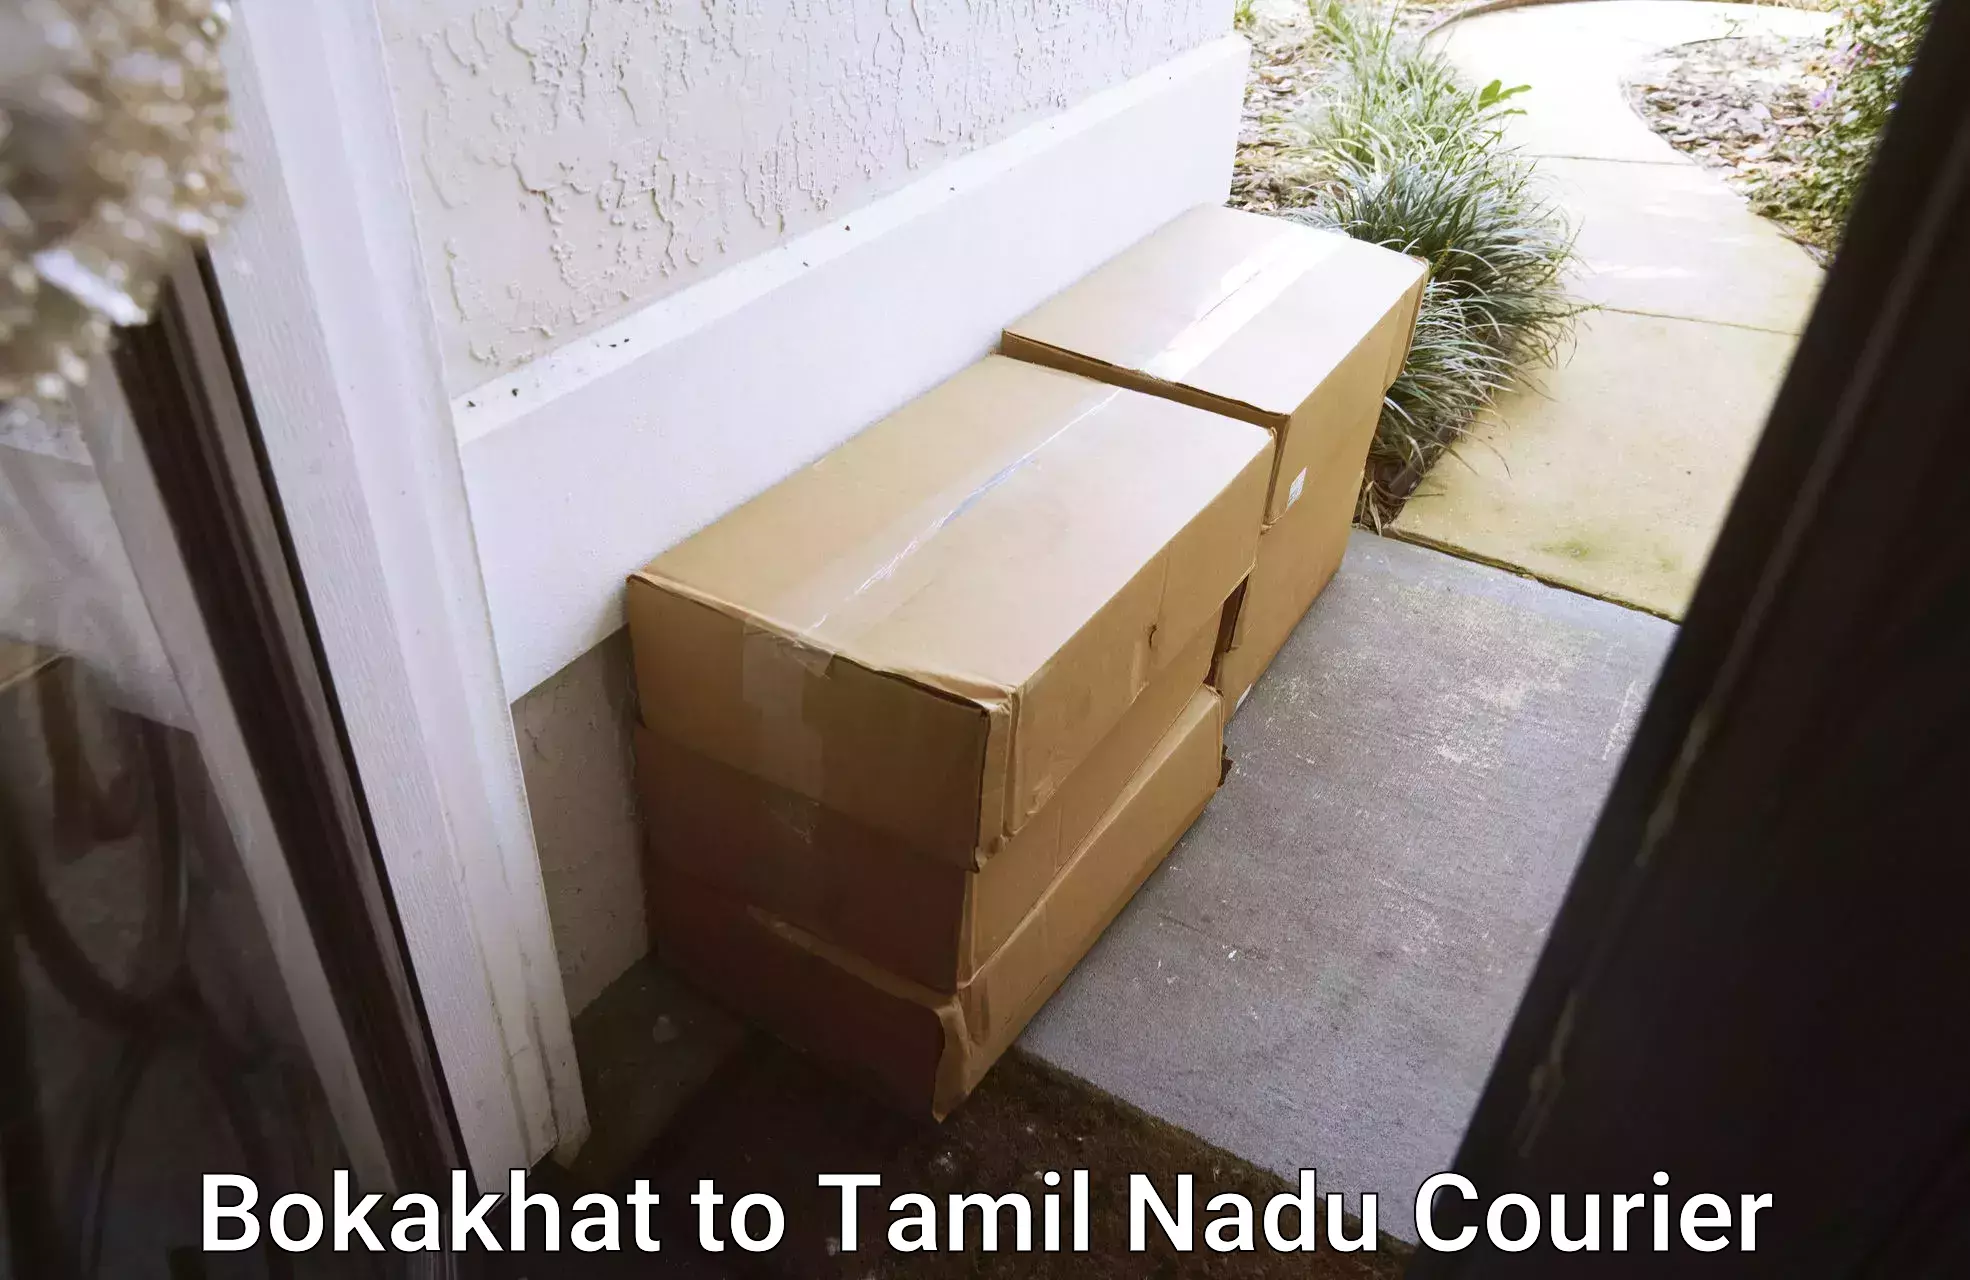 Efficient order fulfillment Bokakhat to Tamil Nadu